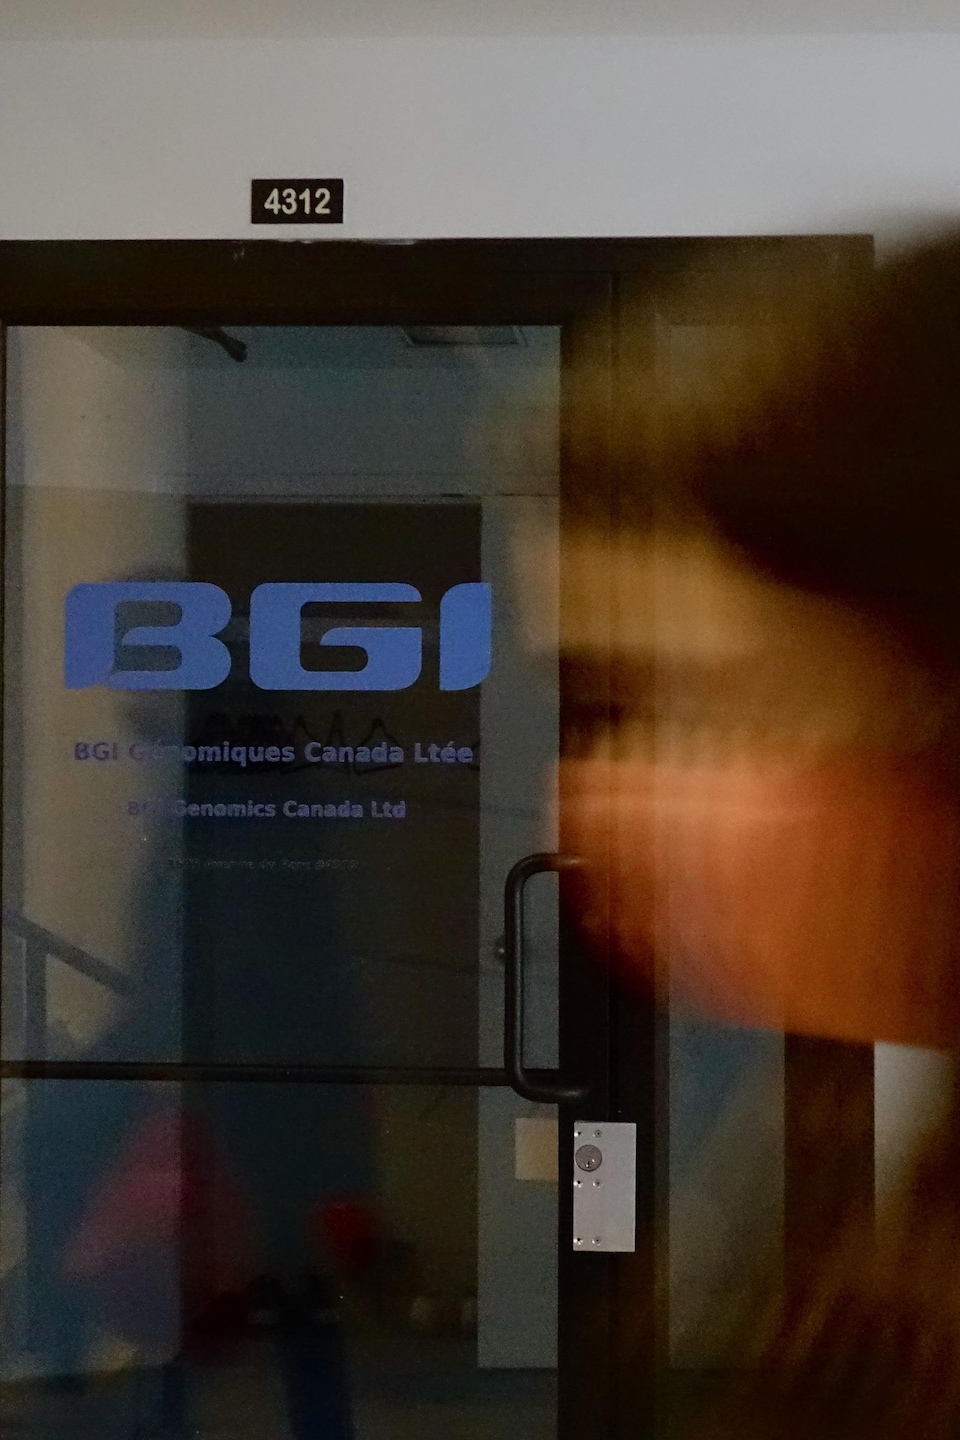 Deux personnes passent devant les locaux de BGI sur l’avenue du Parc, à Montréal.

